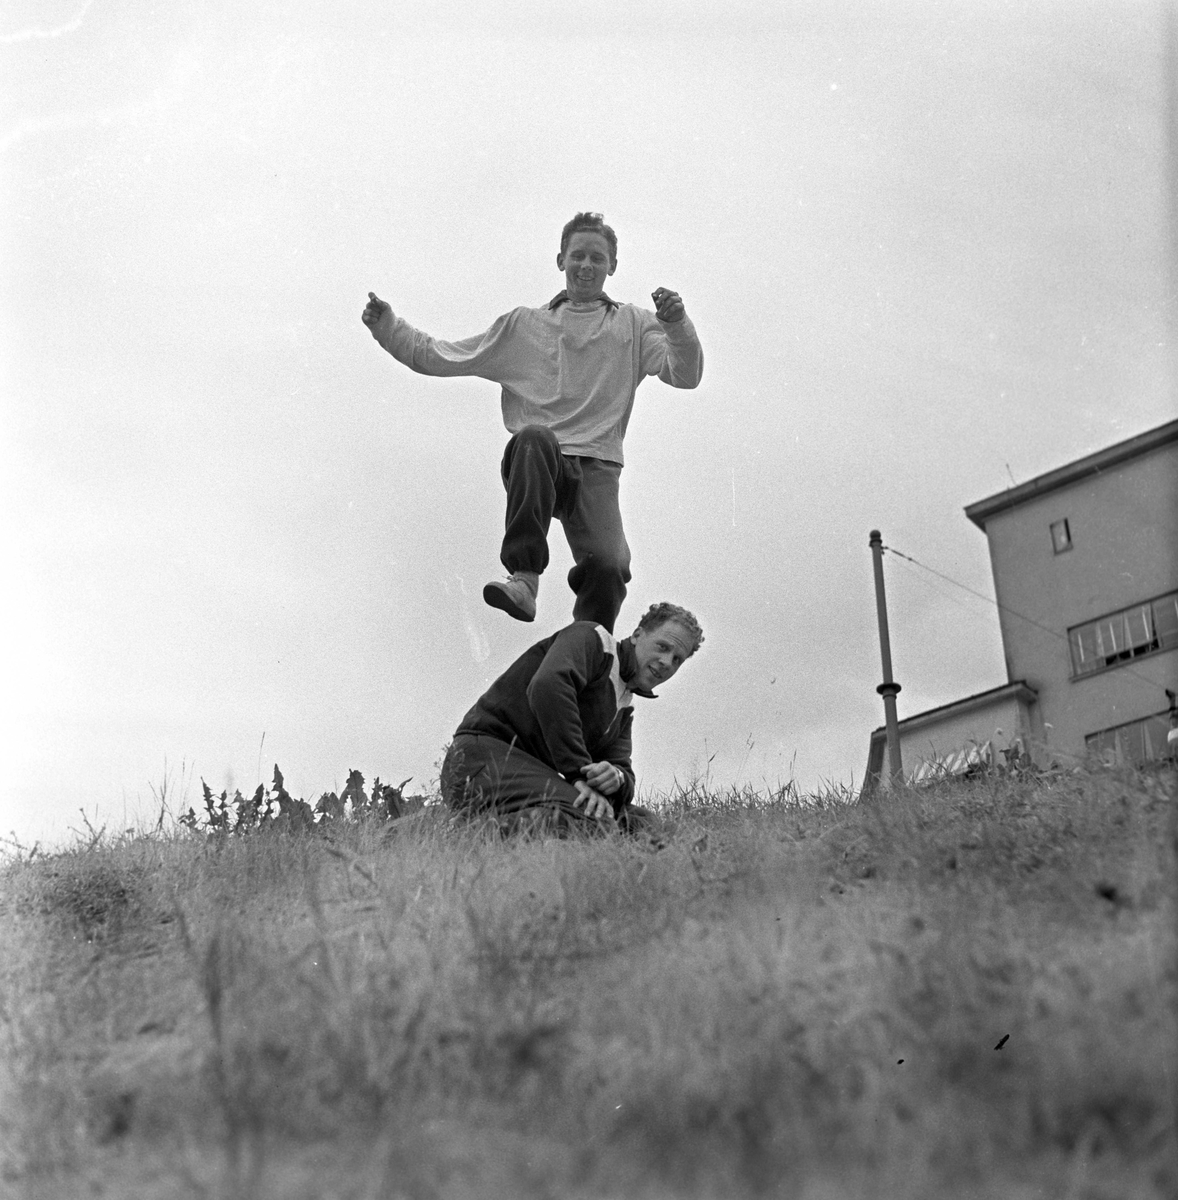 Serie. NM i friidrett ant. Bislett.
Fotografert 1955. 
